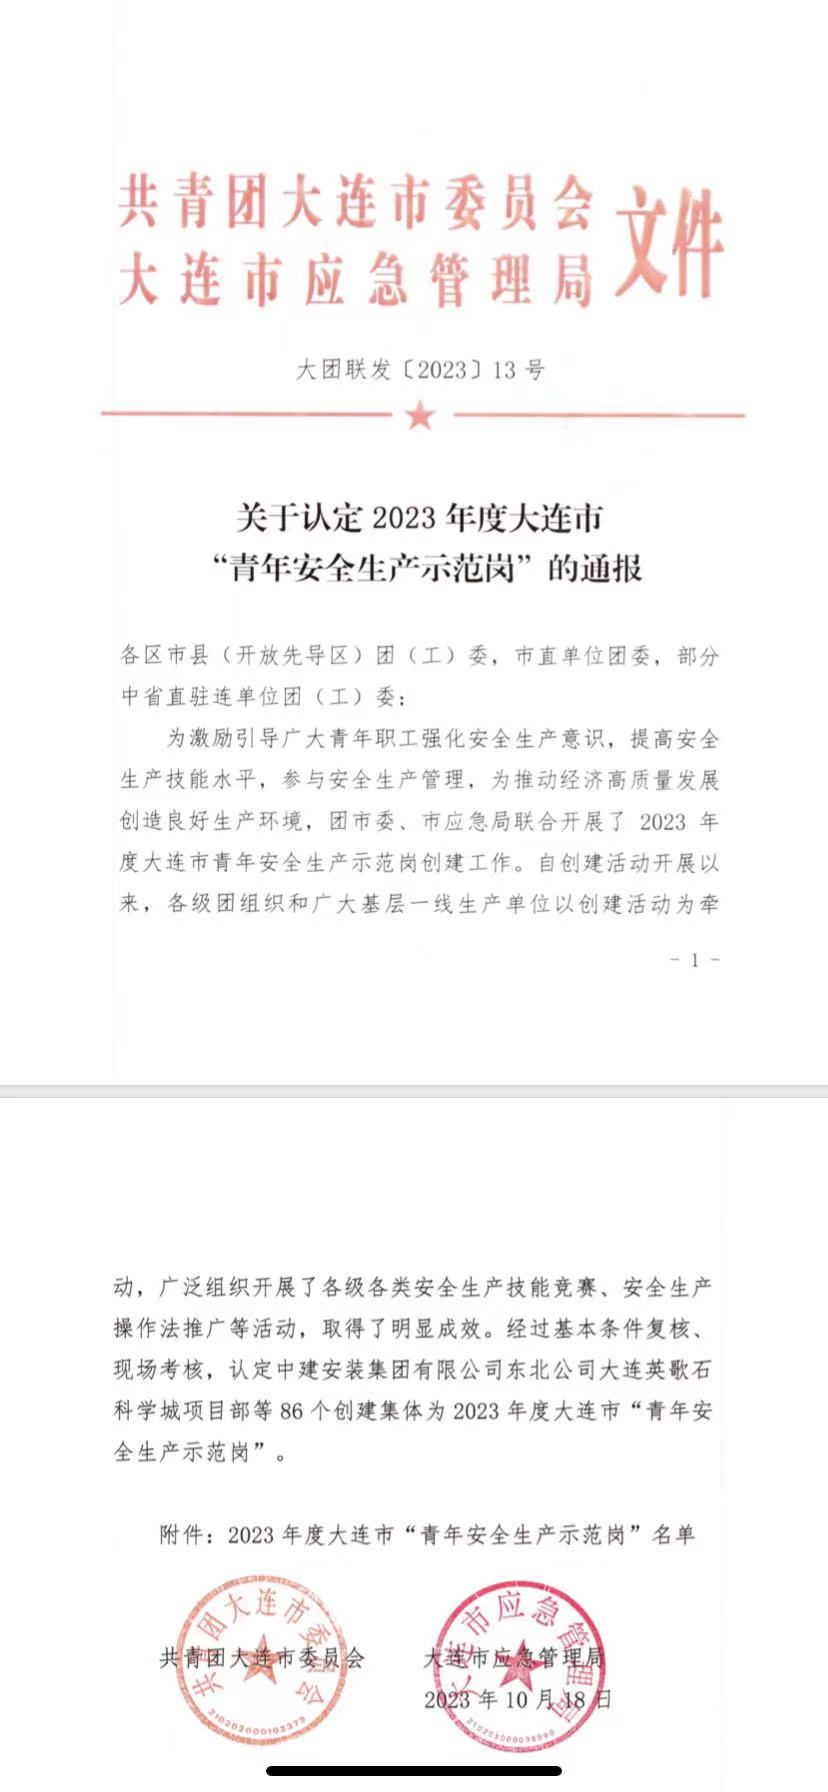 大連華韓被評定為“2023年青年安全生產示范崗”